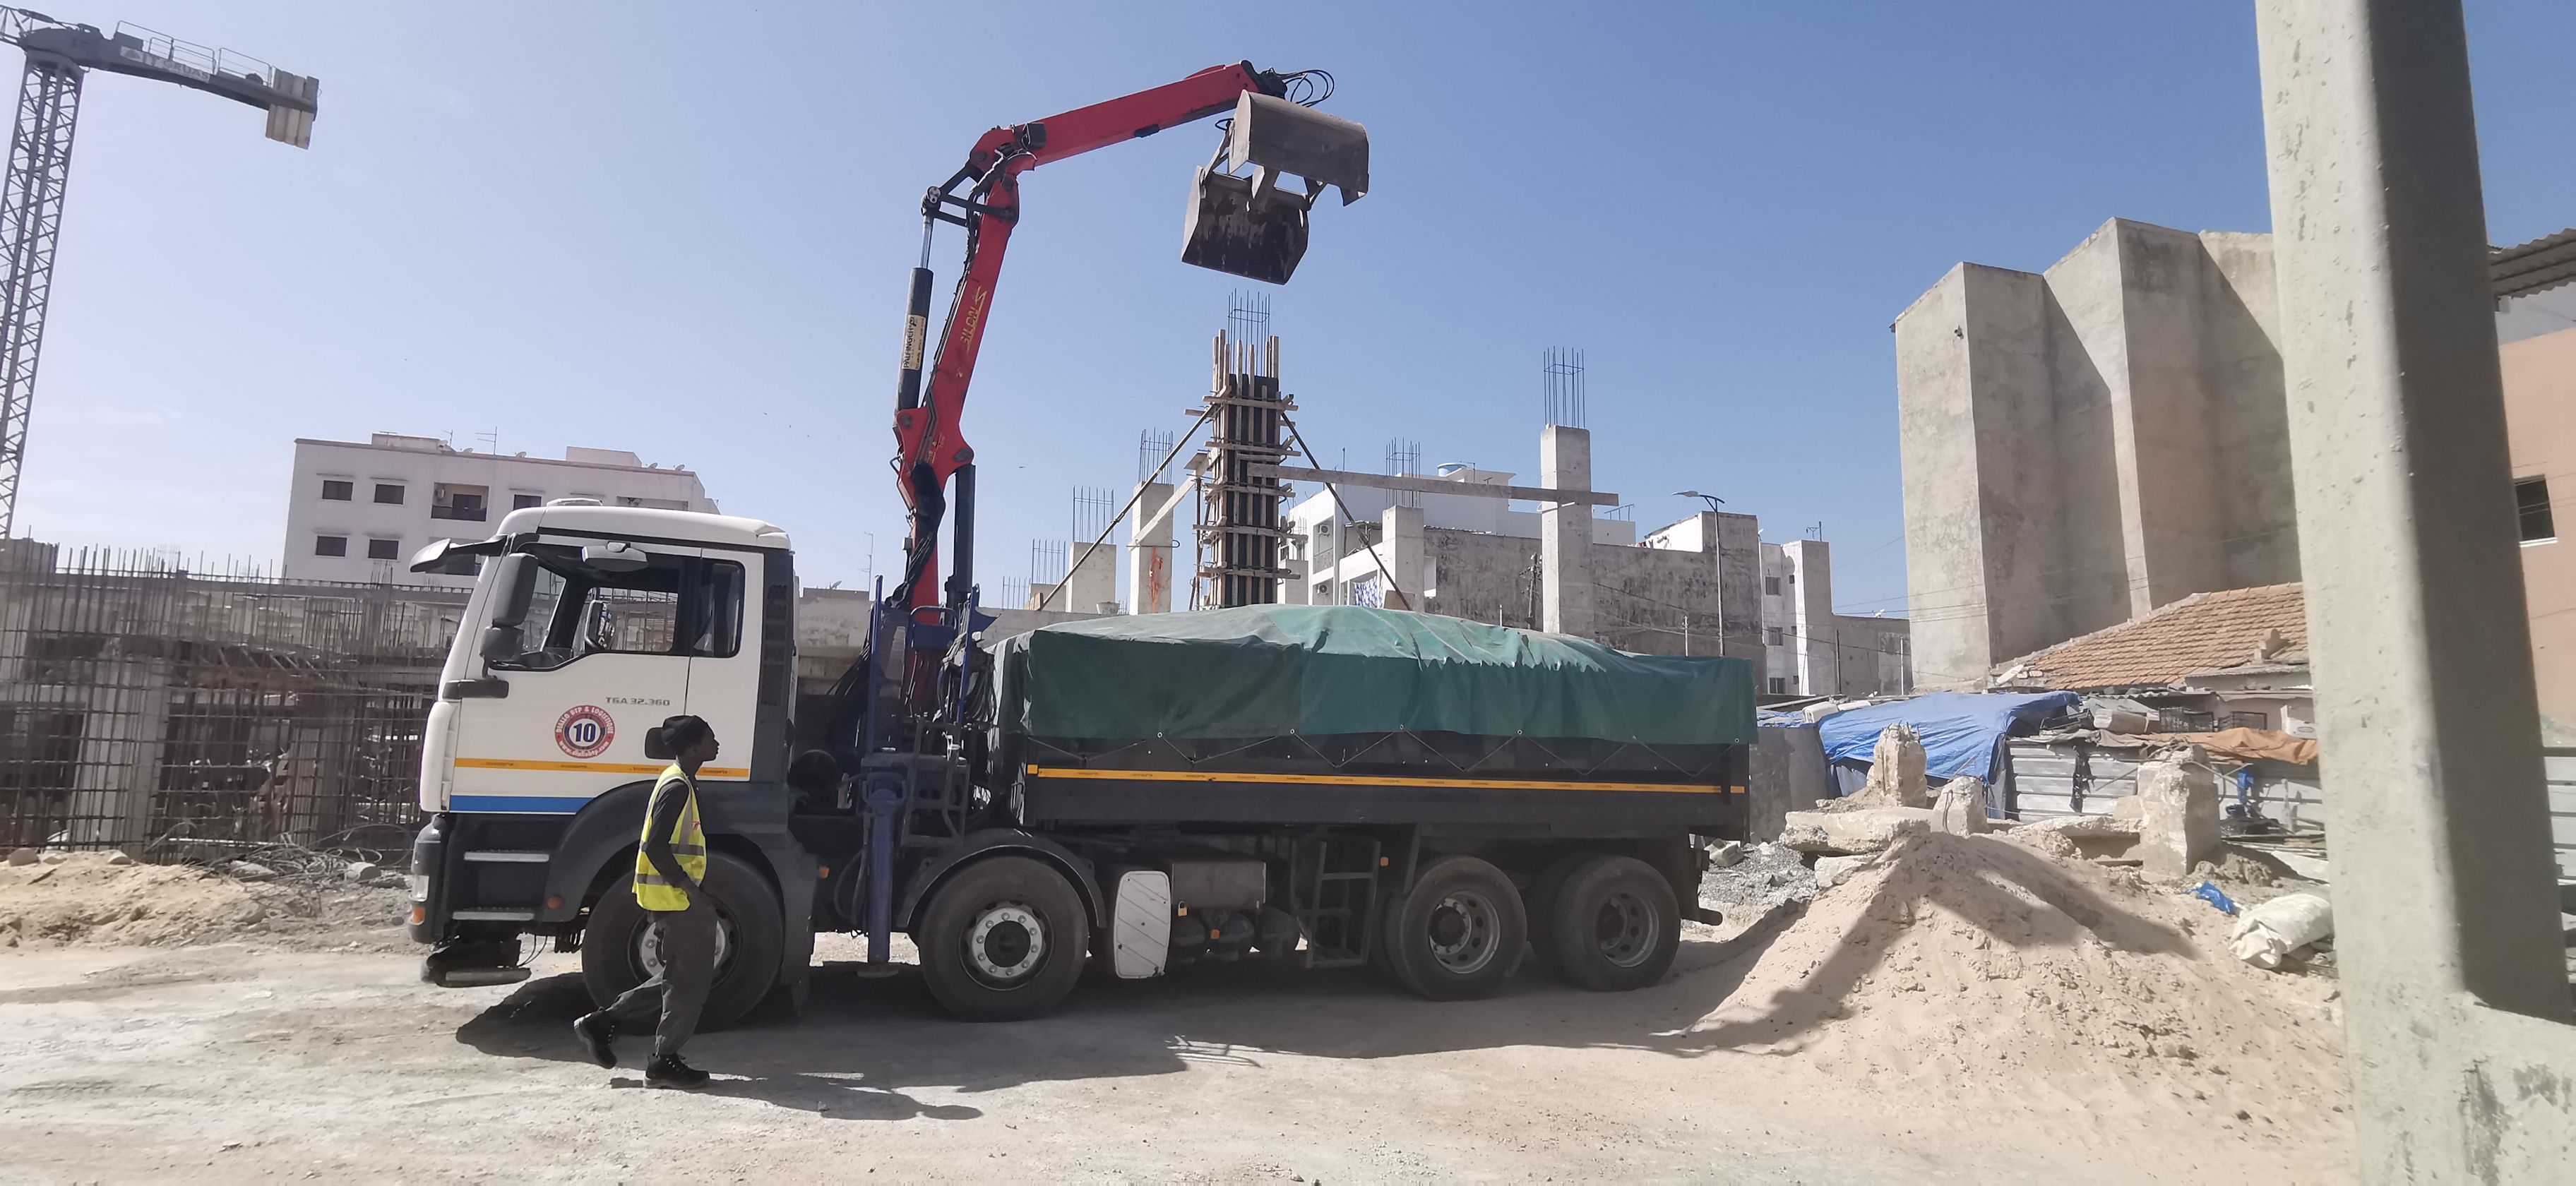 Alquile un camión grúa 8x4 en Senegal: retirada de escombros, venta de materiales de construcción ¡y mucho más!